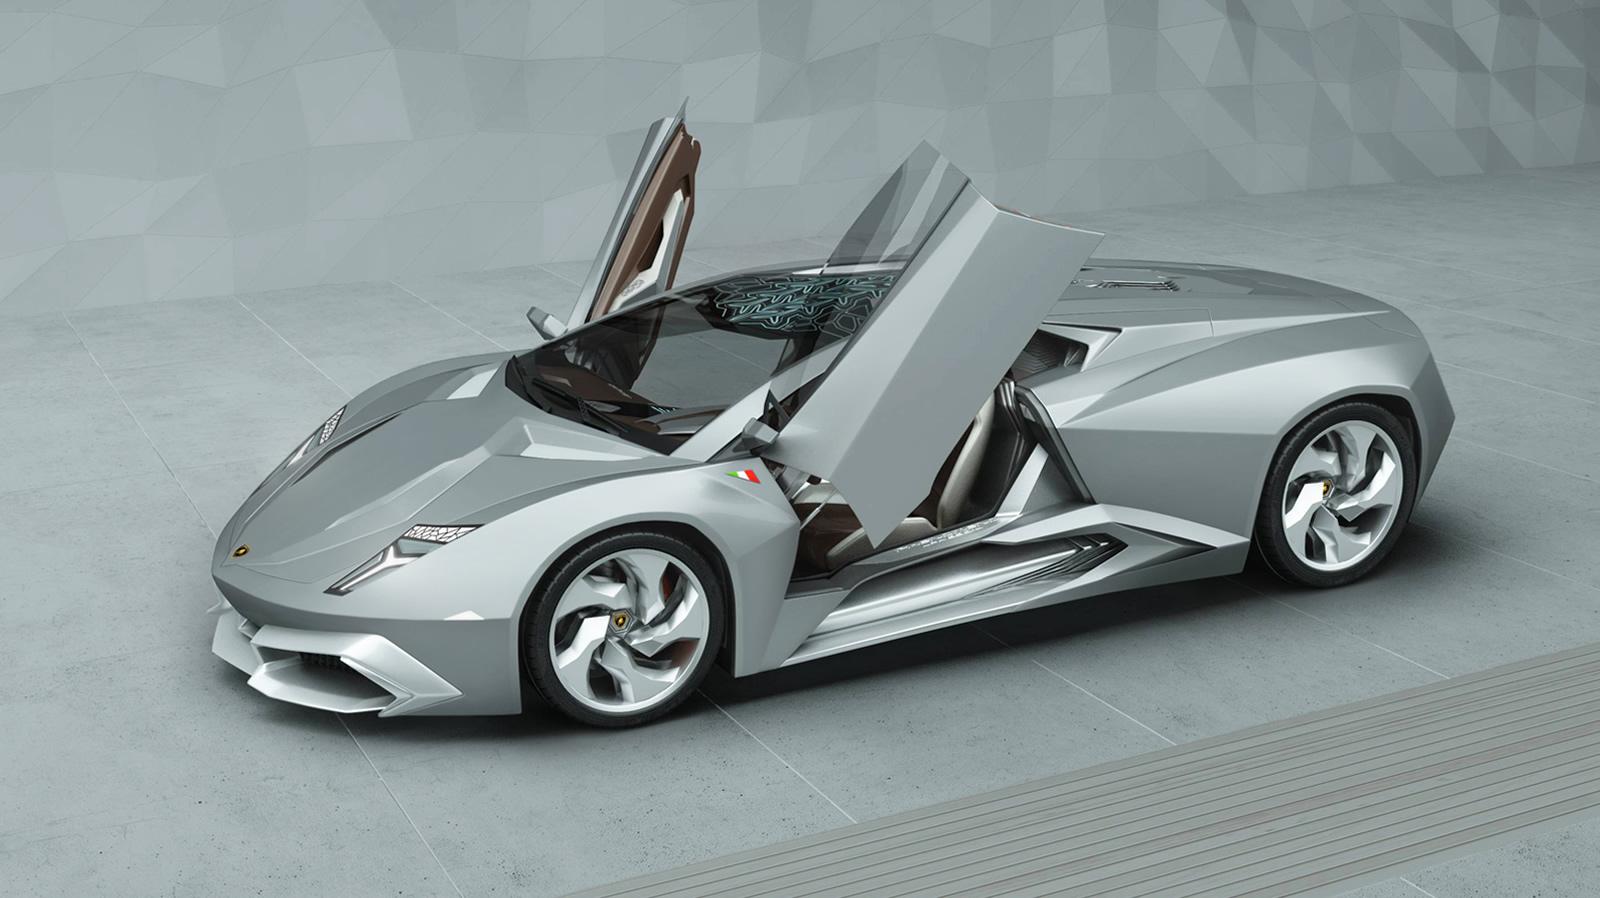 Lamborghini Phenomeno concept render by Grigory Gorin